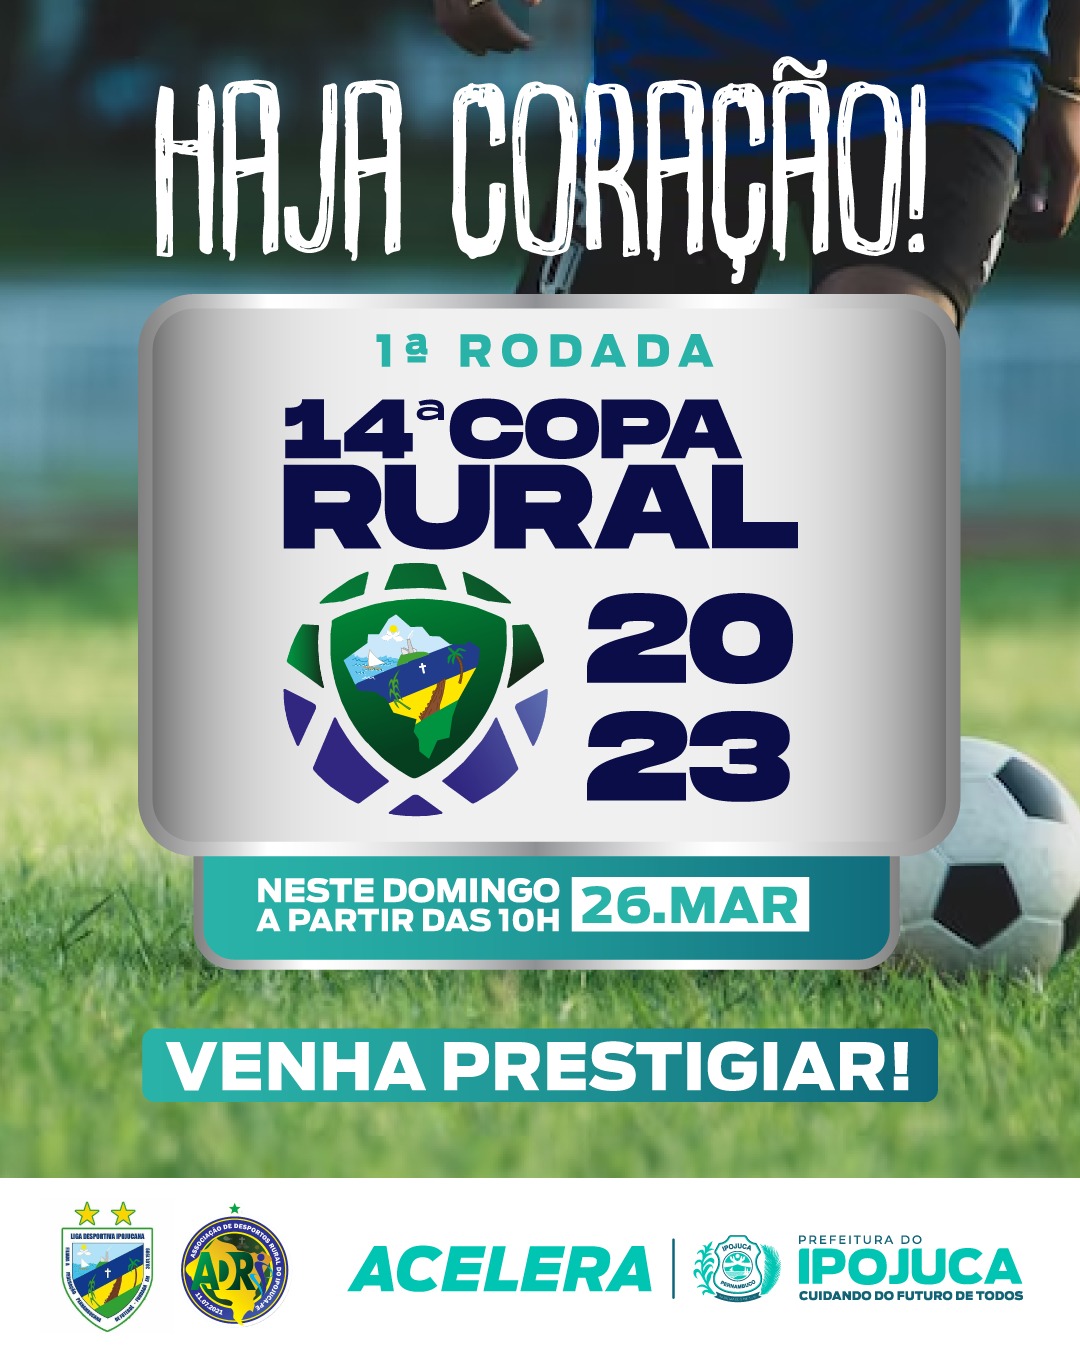 Acompanhe os resultados dos jogos da Copa Rural 2023